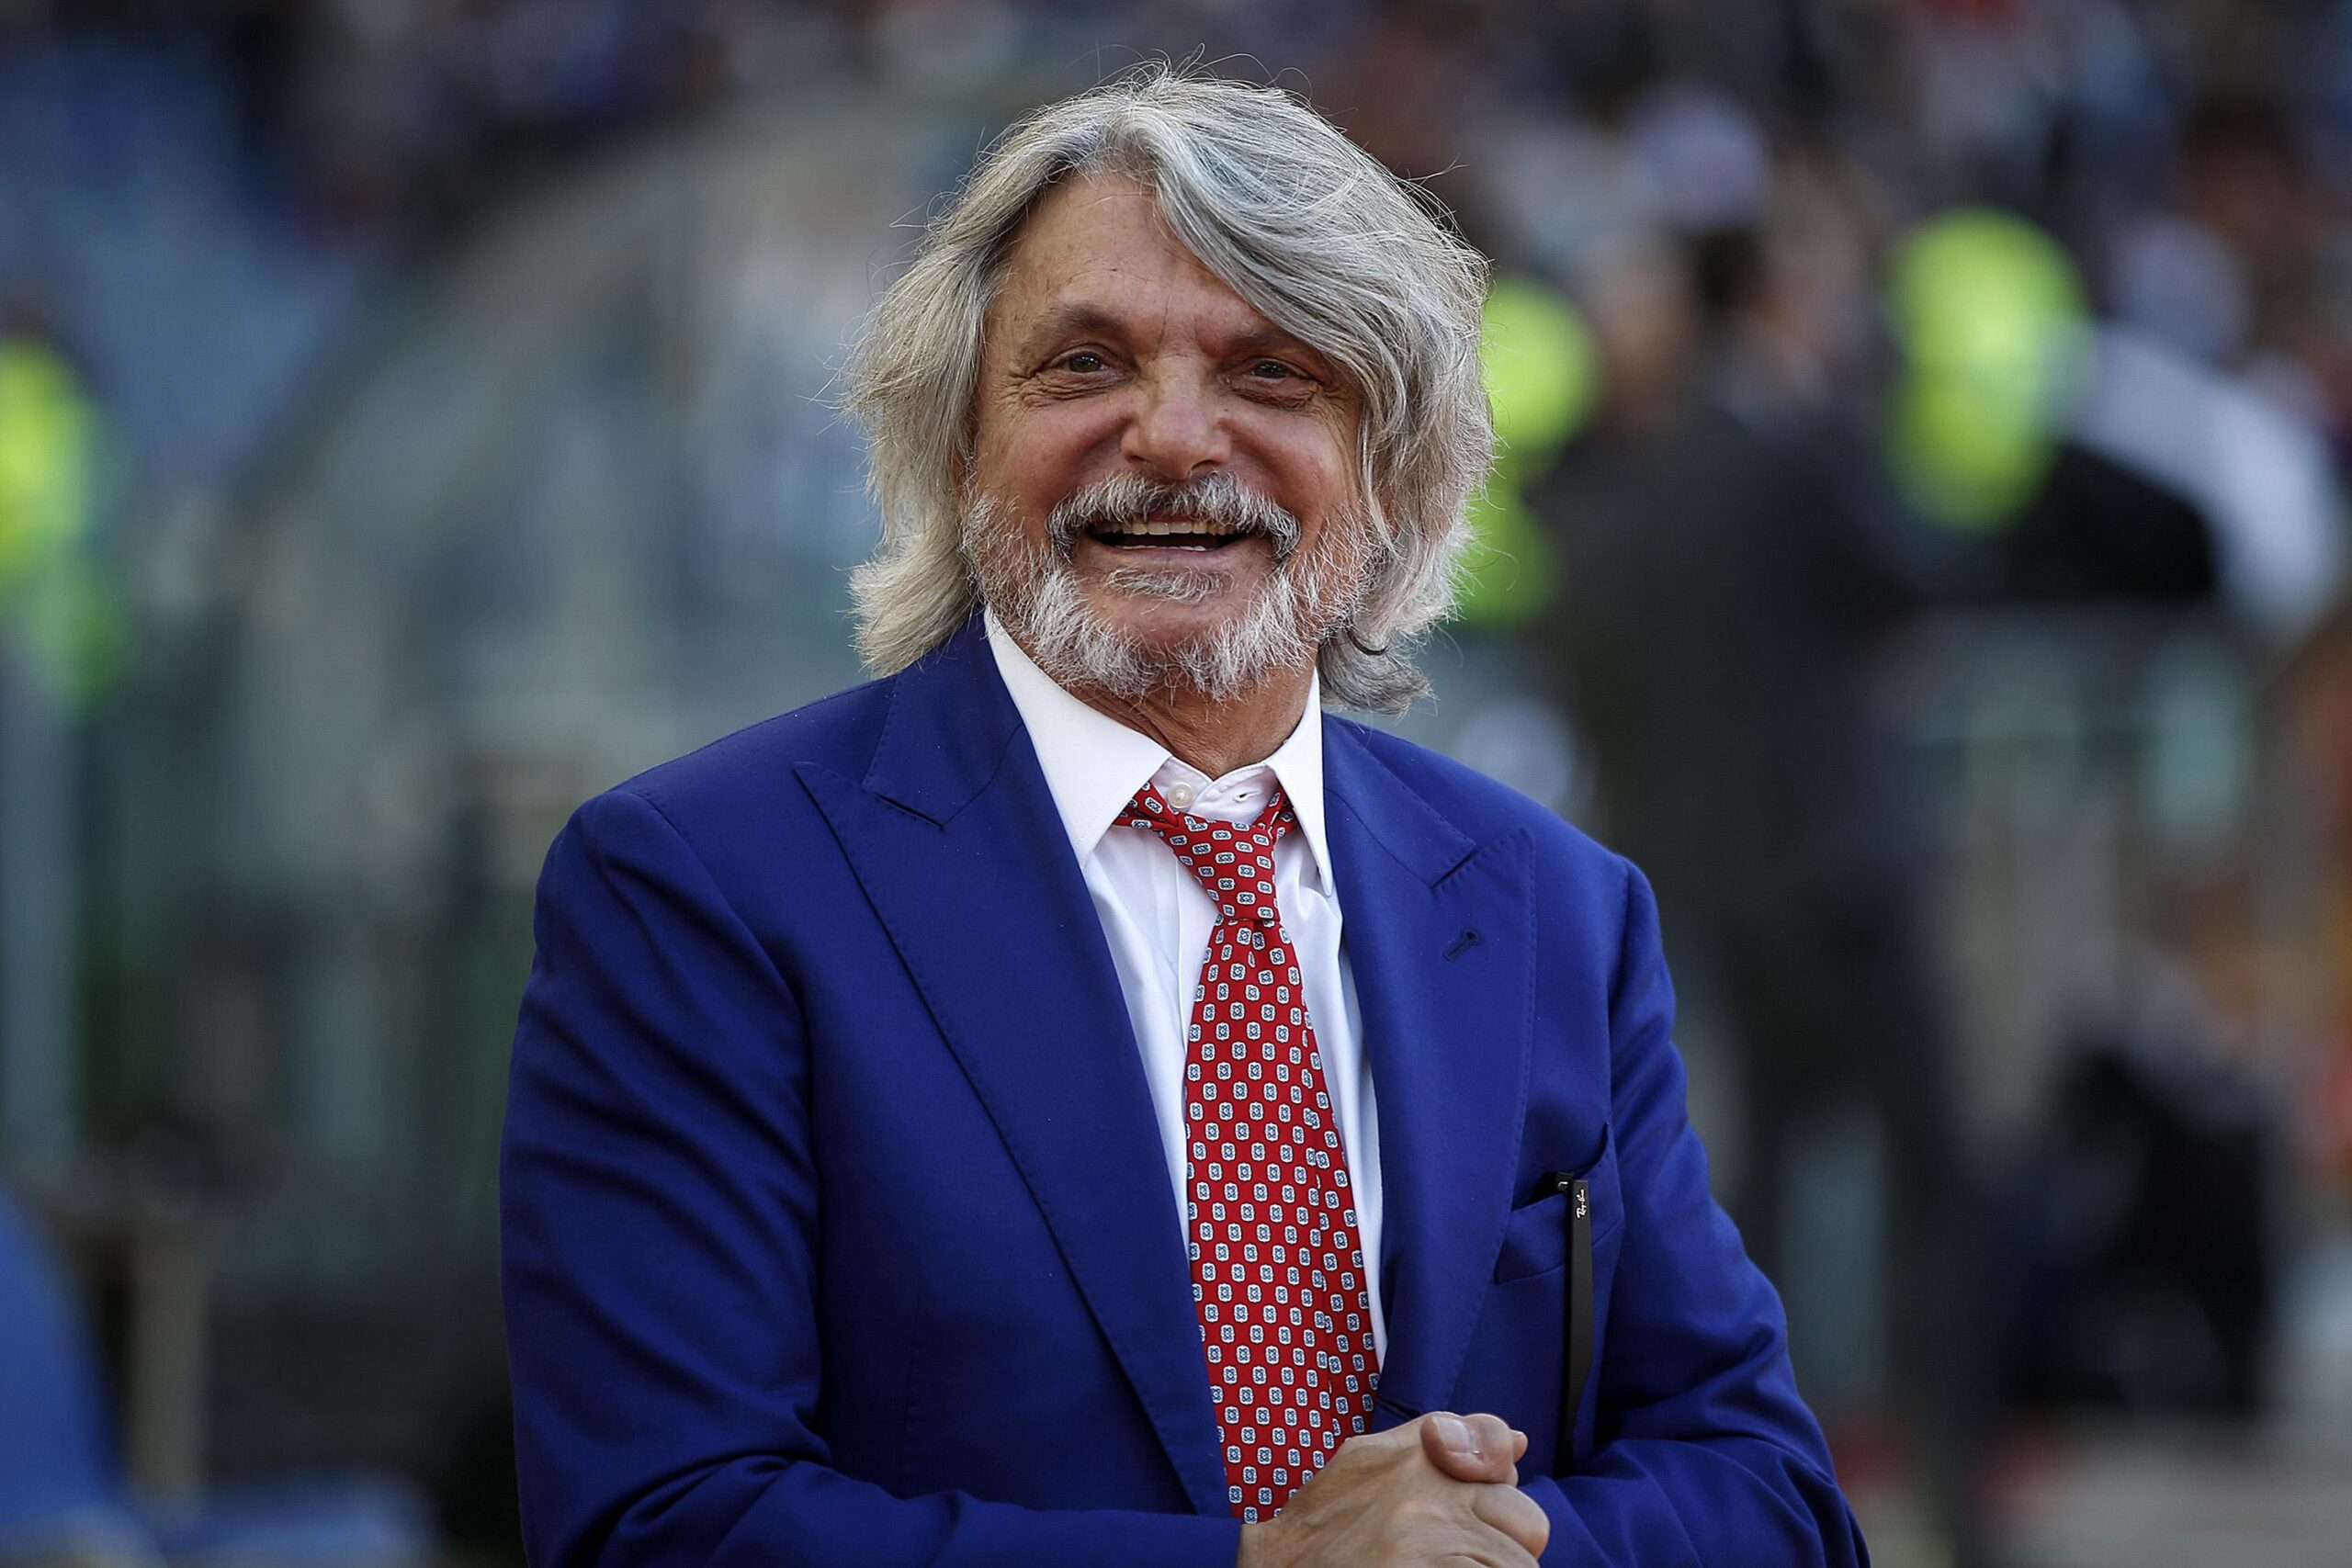 Arrestato il presidente della Sampdoria Massimo Ferrero, club non coinvolto